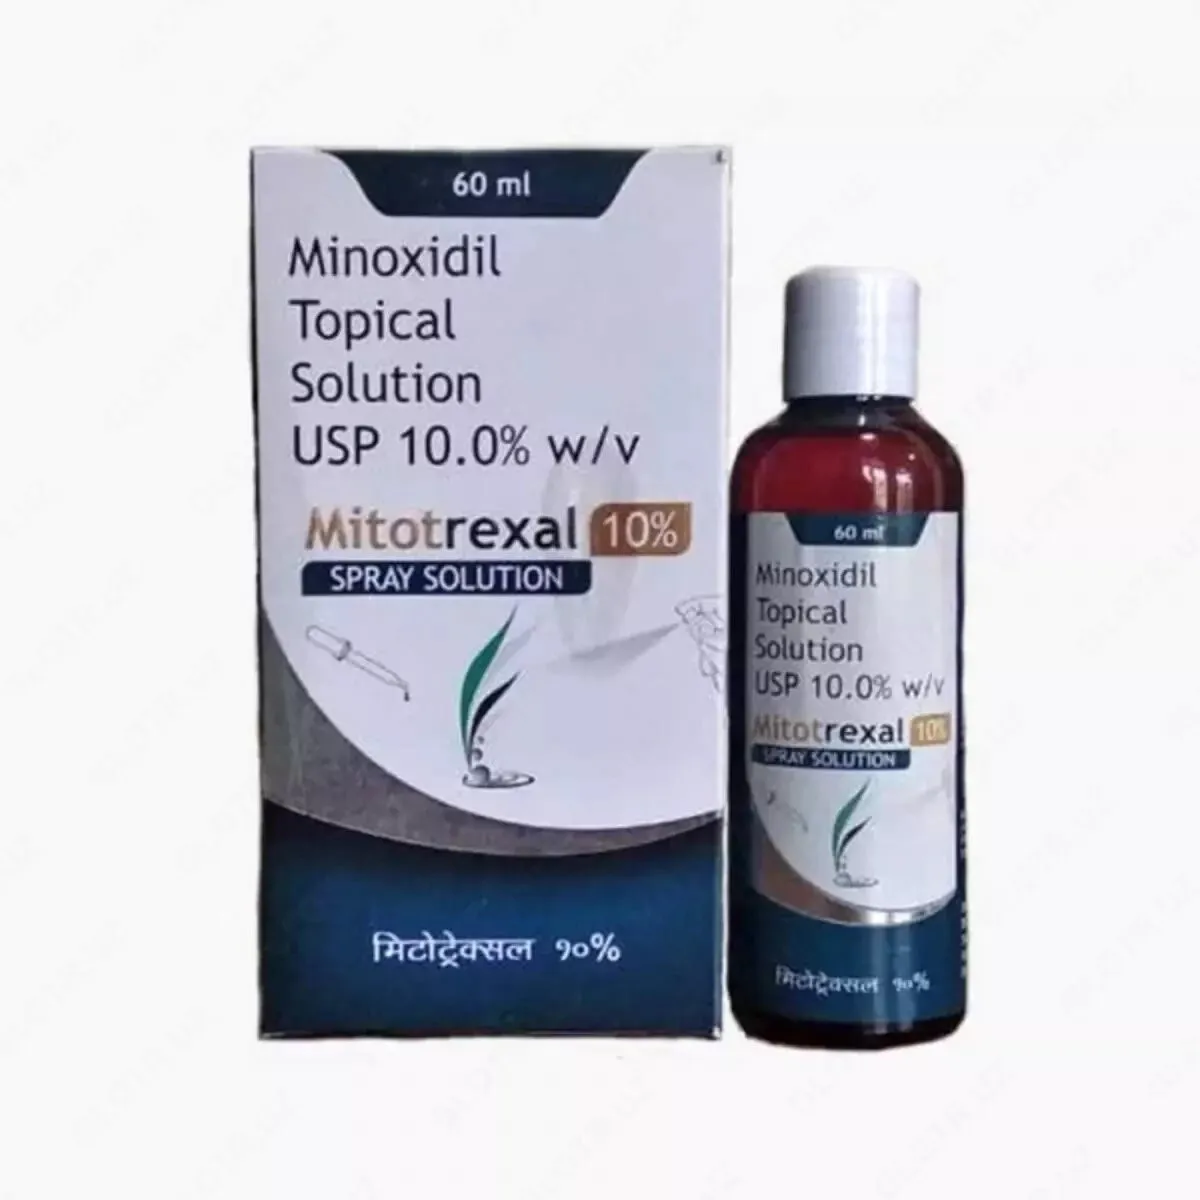 Средство для лечения волос Миноксидил 10% Topical Solution (Mitotrexal 10%)#3